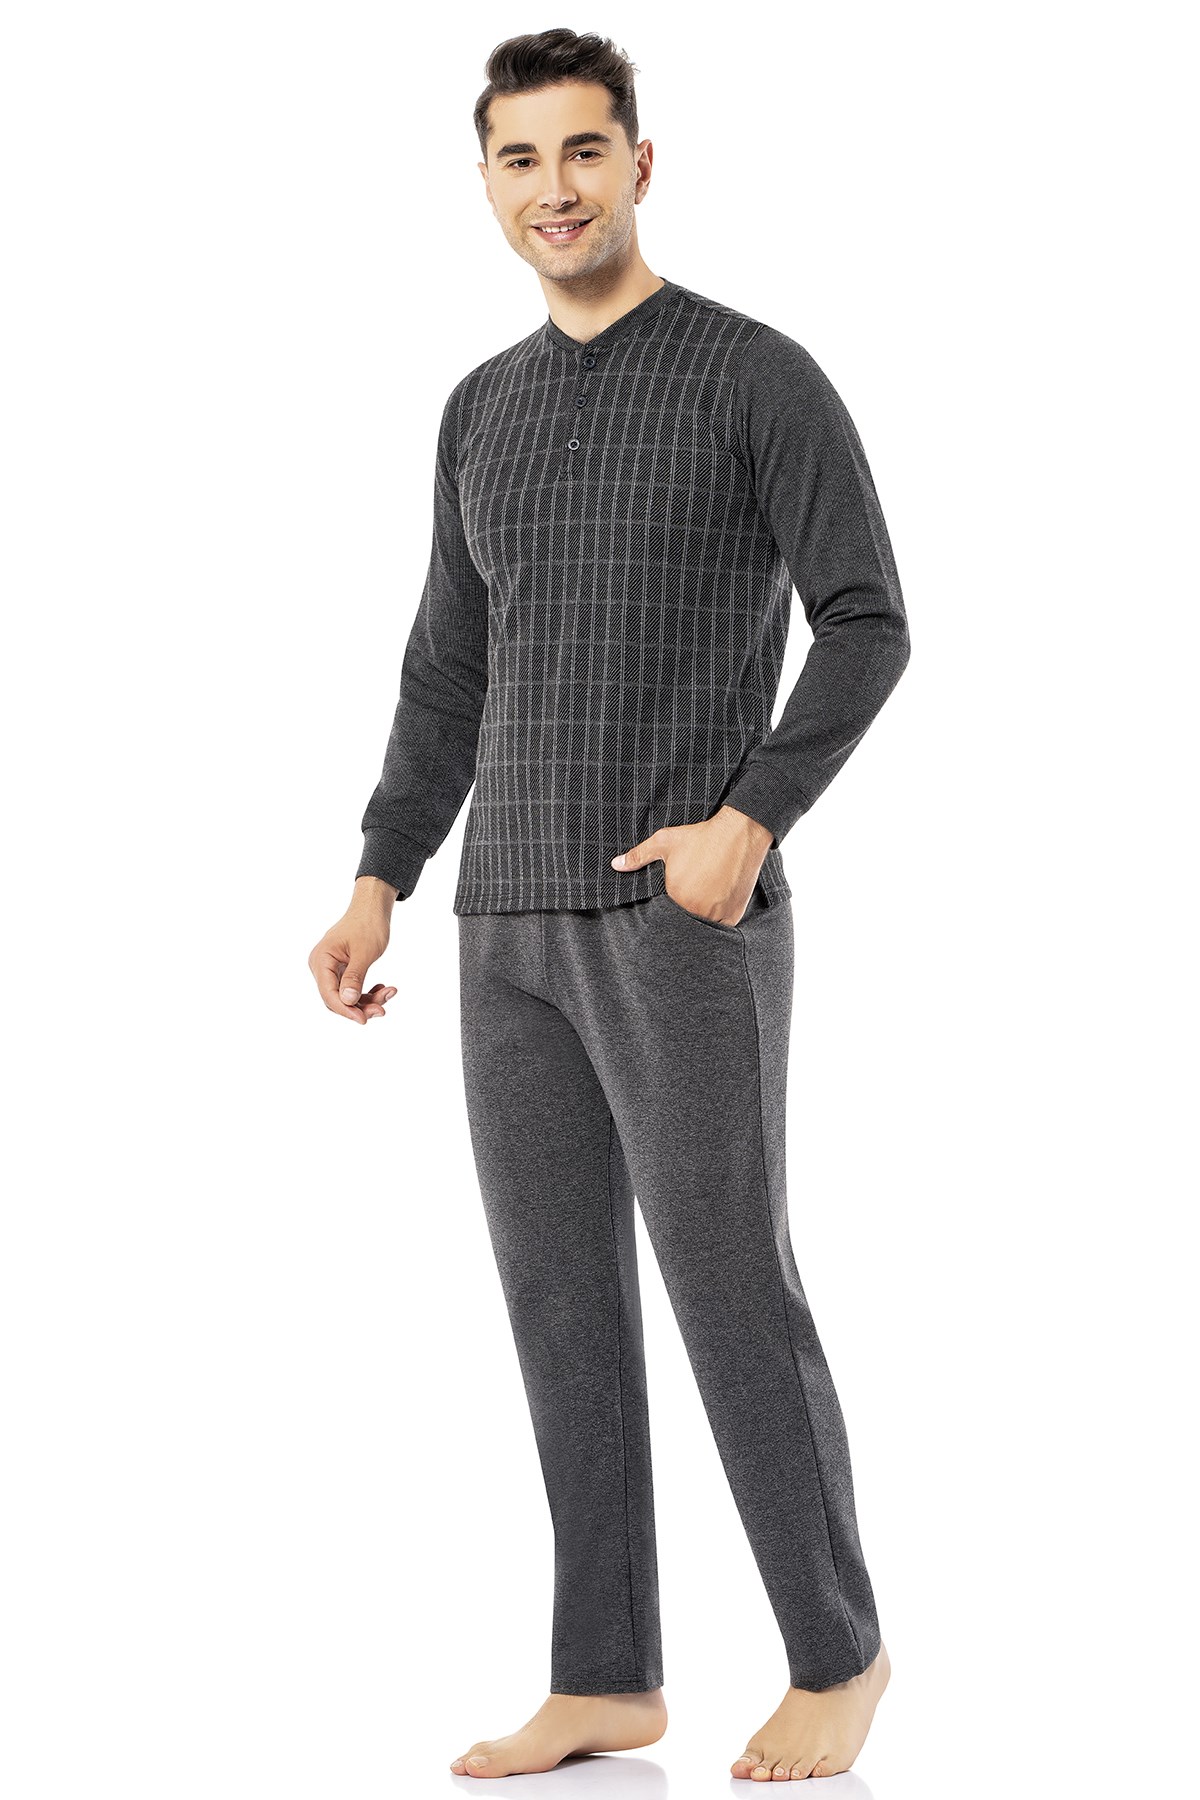 Erdem Men's Winter Pyjama Set